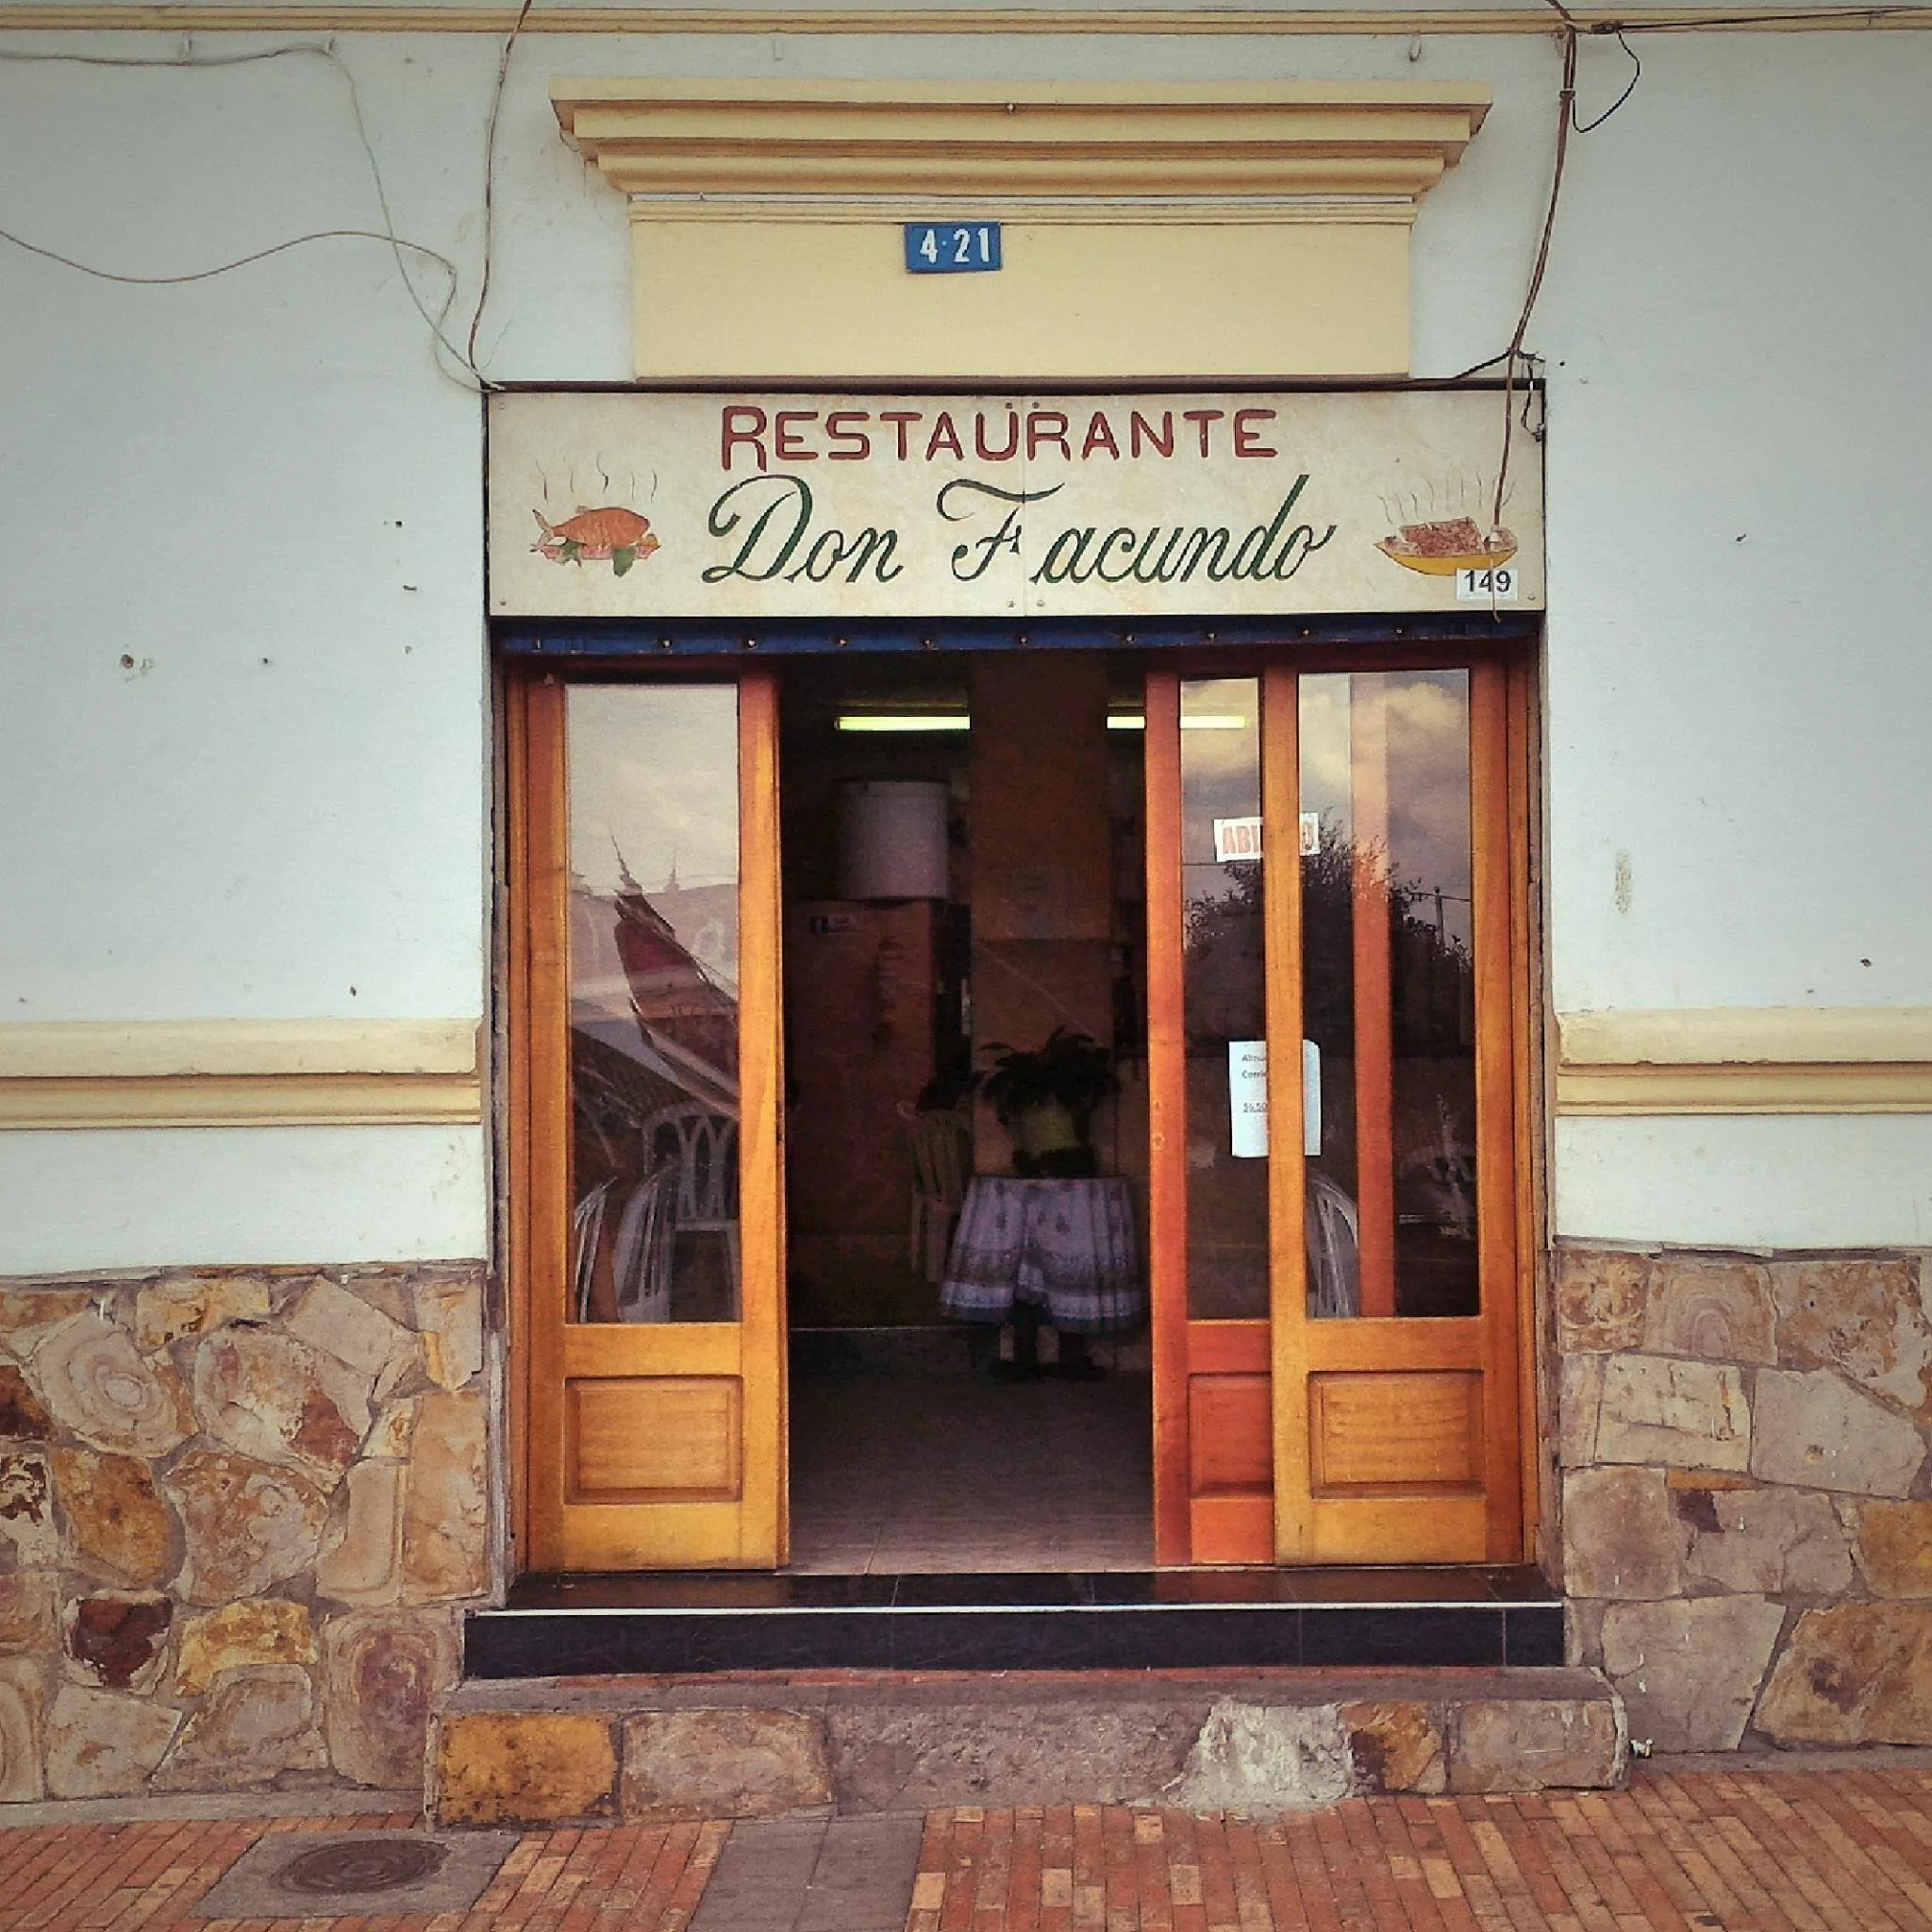 Restaurante-restaurante-don-facundo-24390